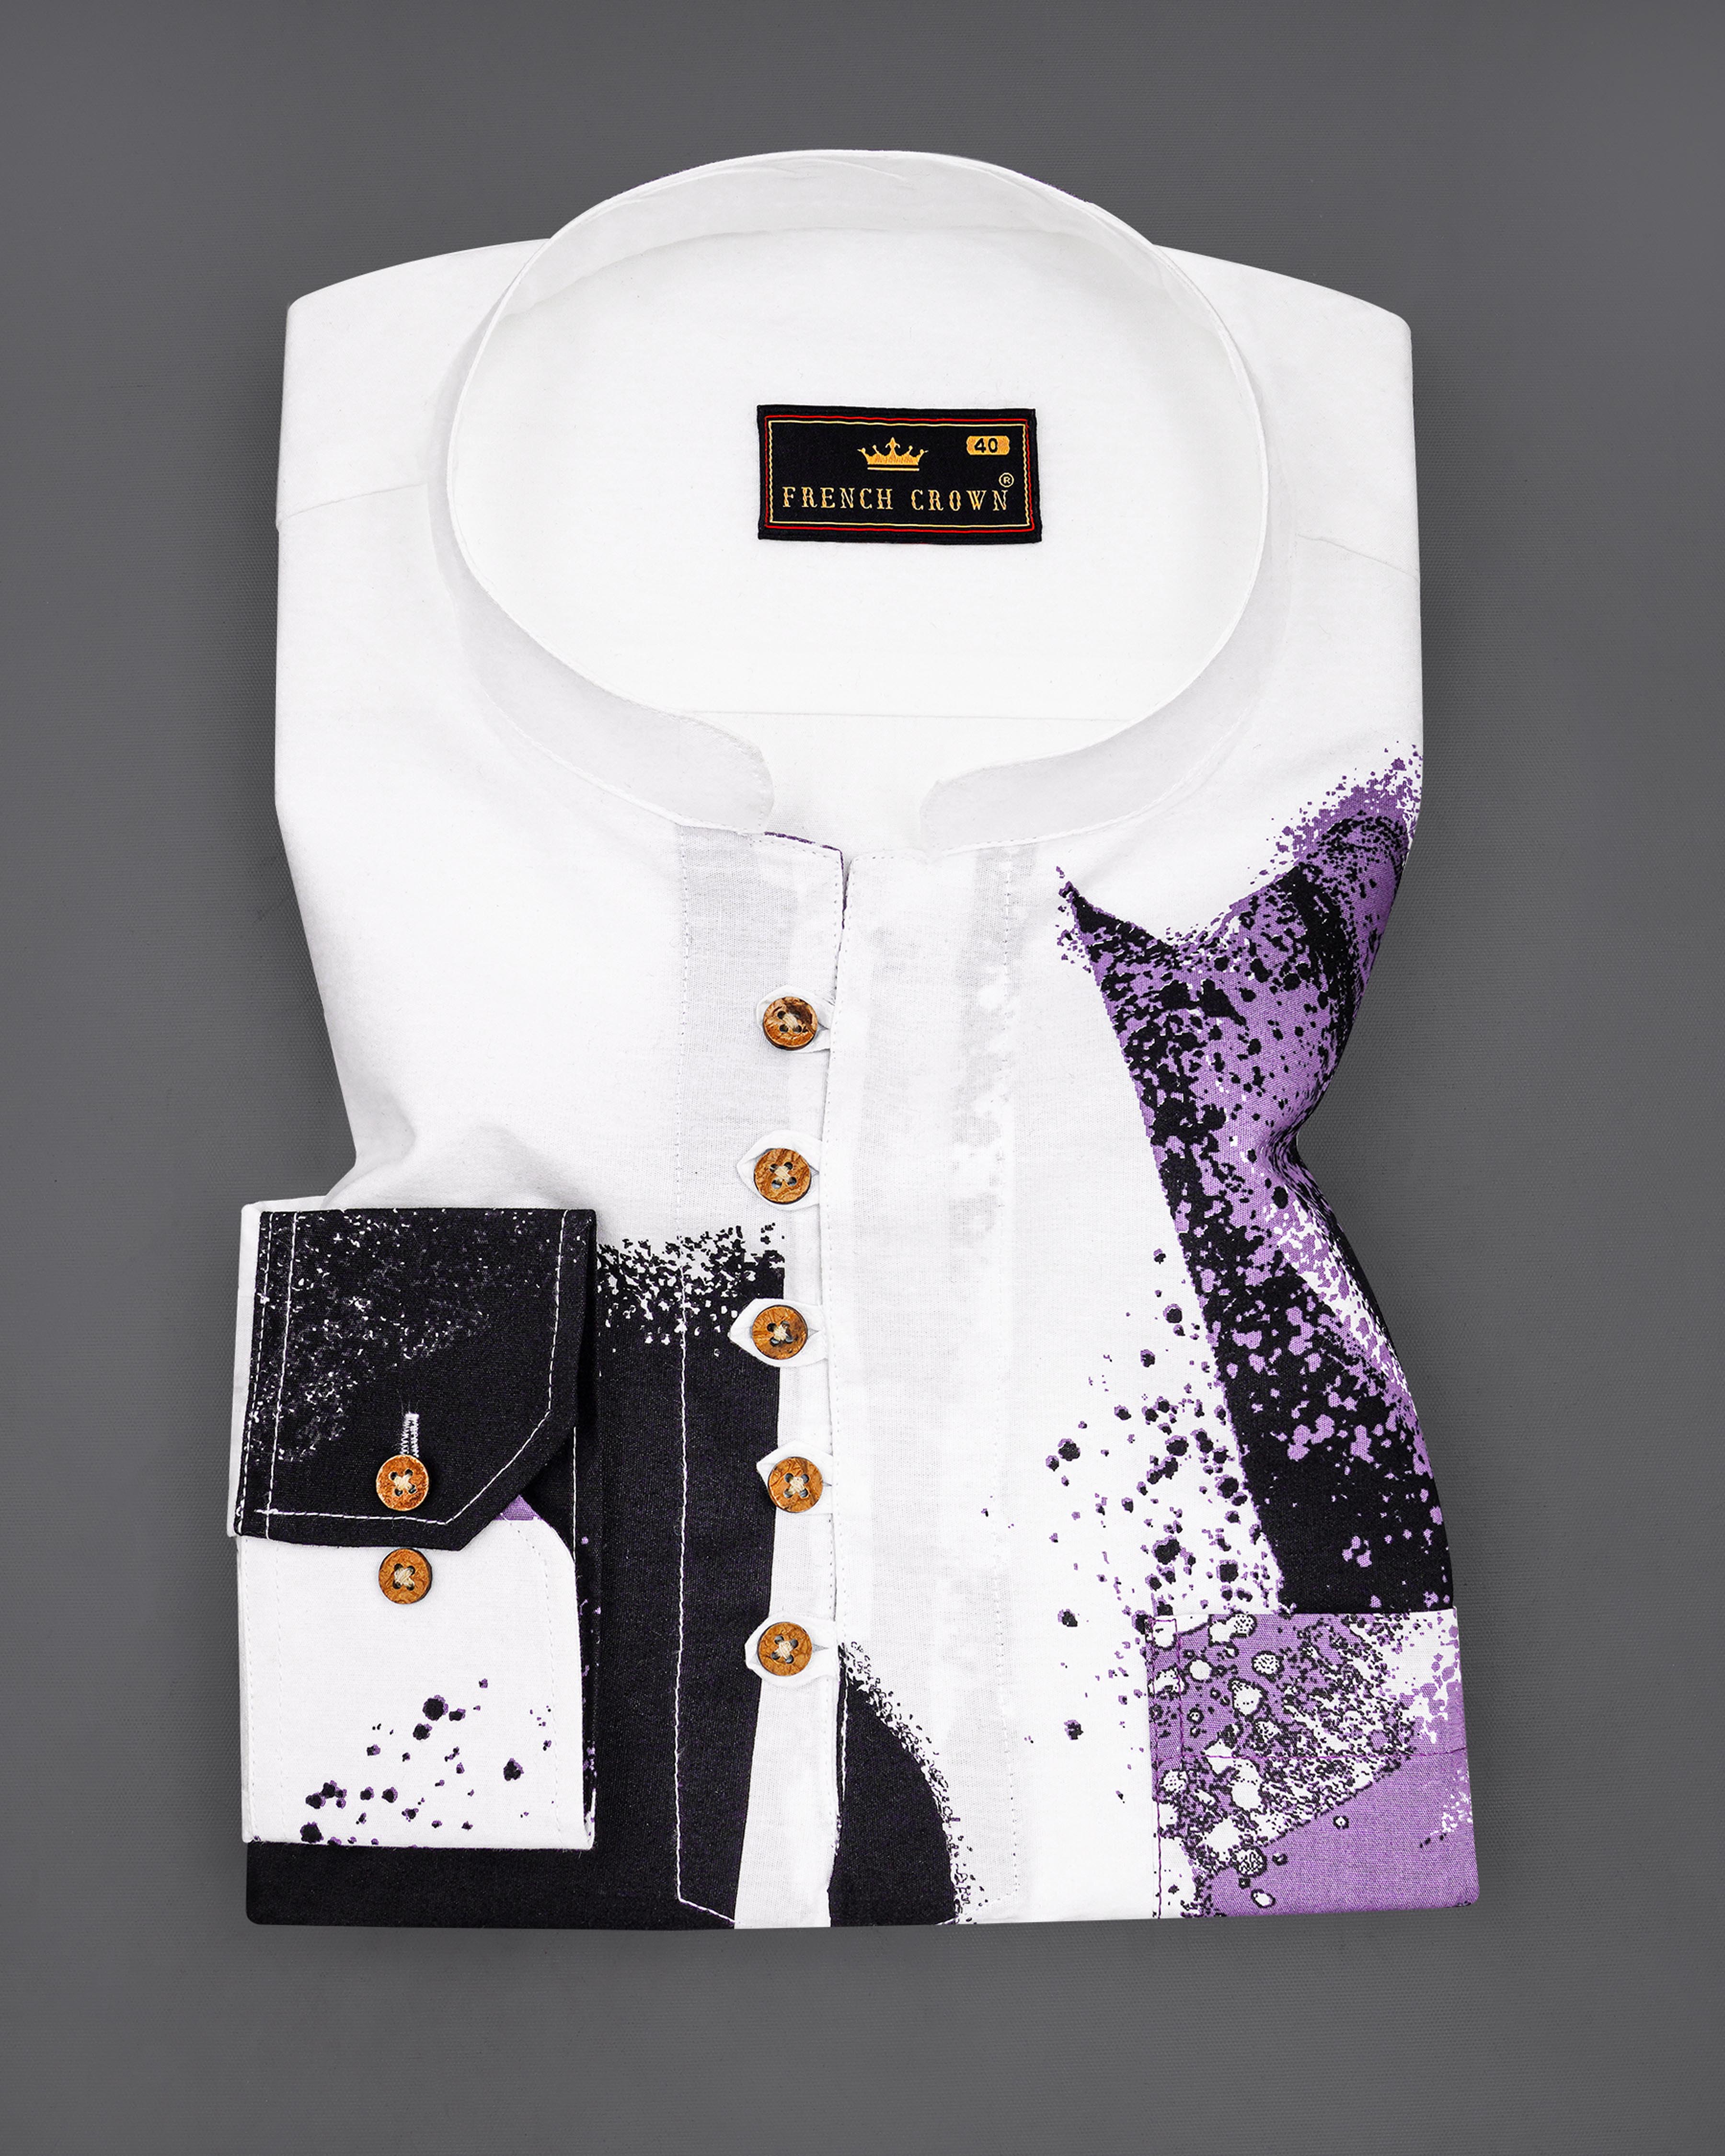 Bright White with Viola Purple and Black Printed Premium Cotton Kurta Shirt 8198-KS -38,8198-KS -H-38,8198-KS -39,8198-KS -H-39,8198-KS -40,8198-KS -H-40,8198-KS -42,8198-KS -H-42,8198-KS -44,8198-KS -H-44,8198-KS -46,8198-KS -H-46,8198-KS -48,8198-KS -H-48,8198-KS -50,8198-KS -H-50,8198-KS -52,8198-KS -H-52